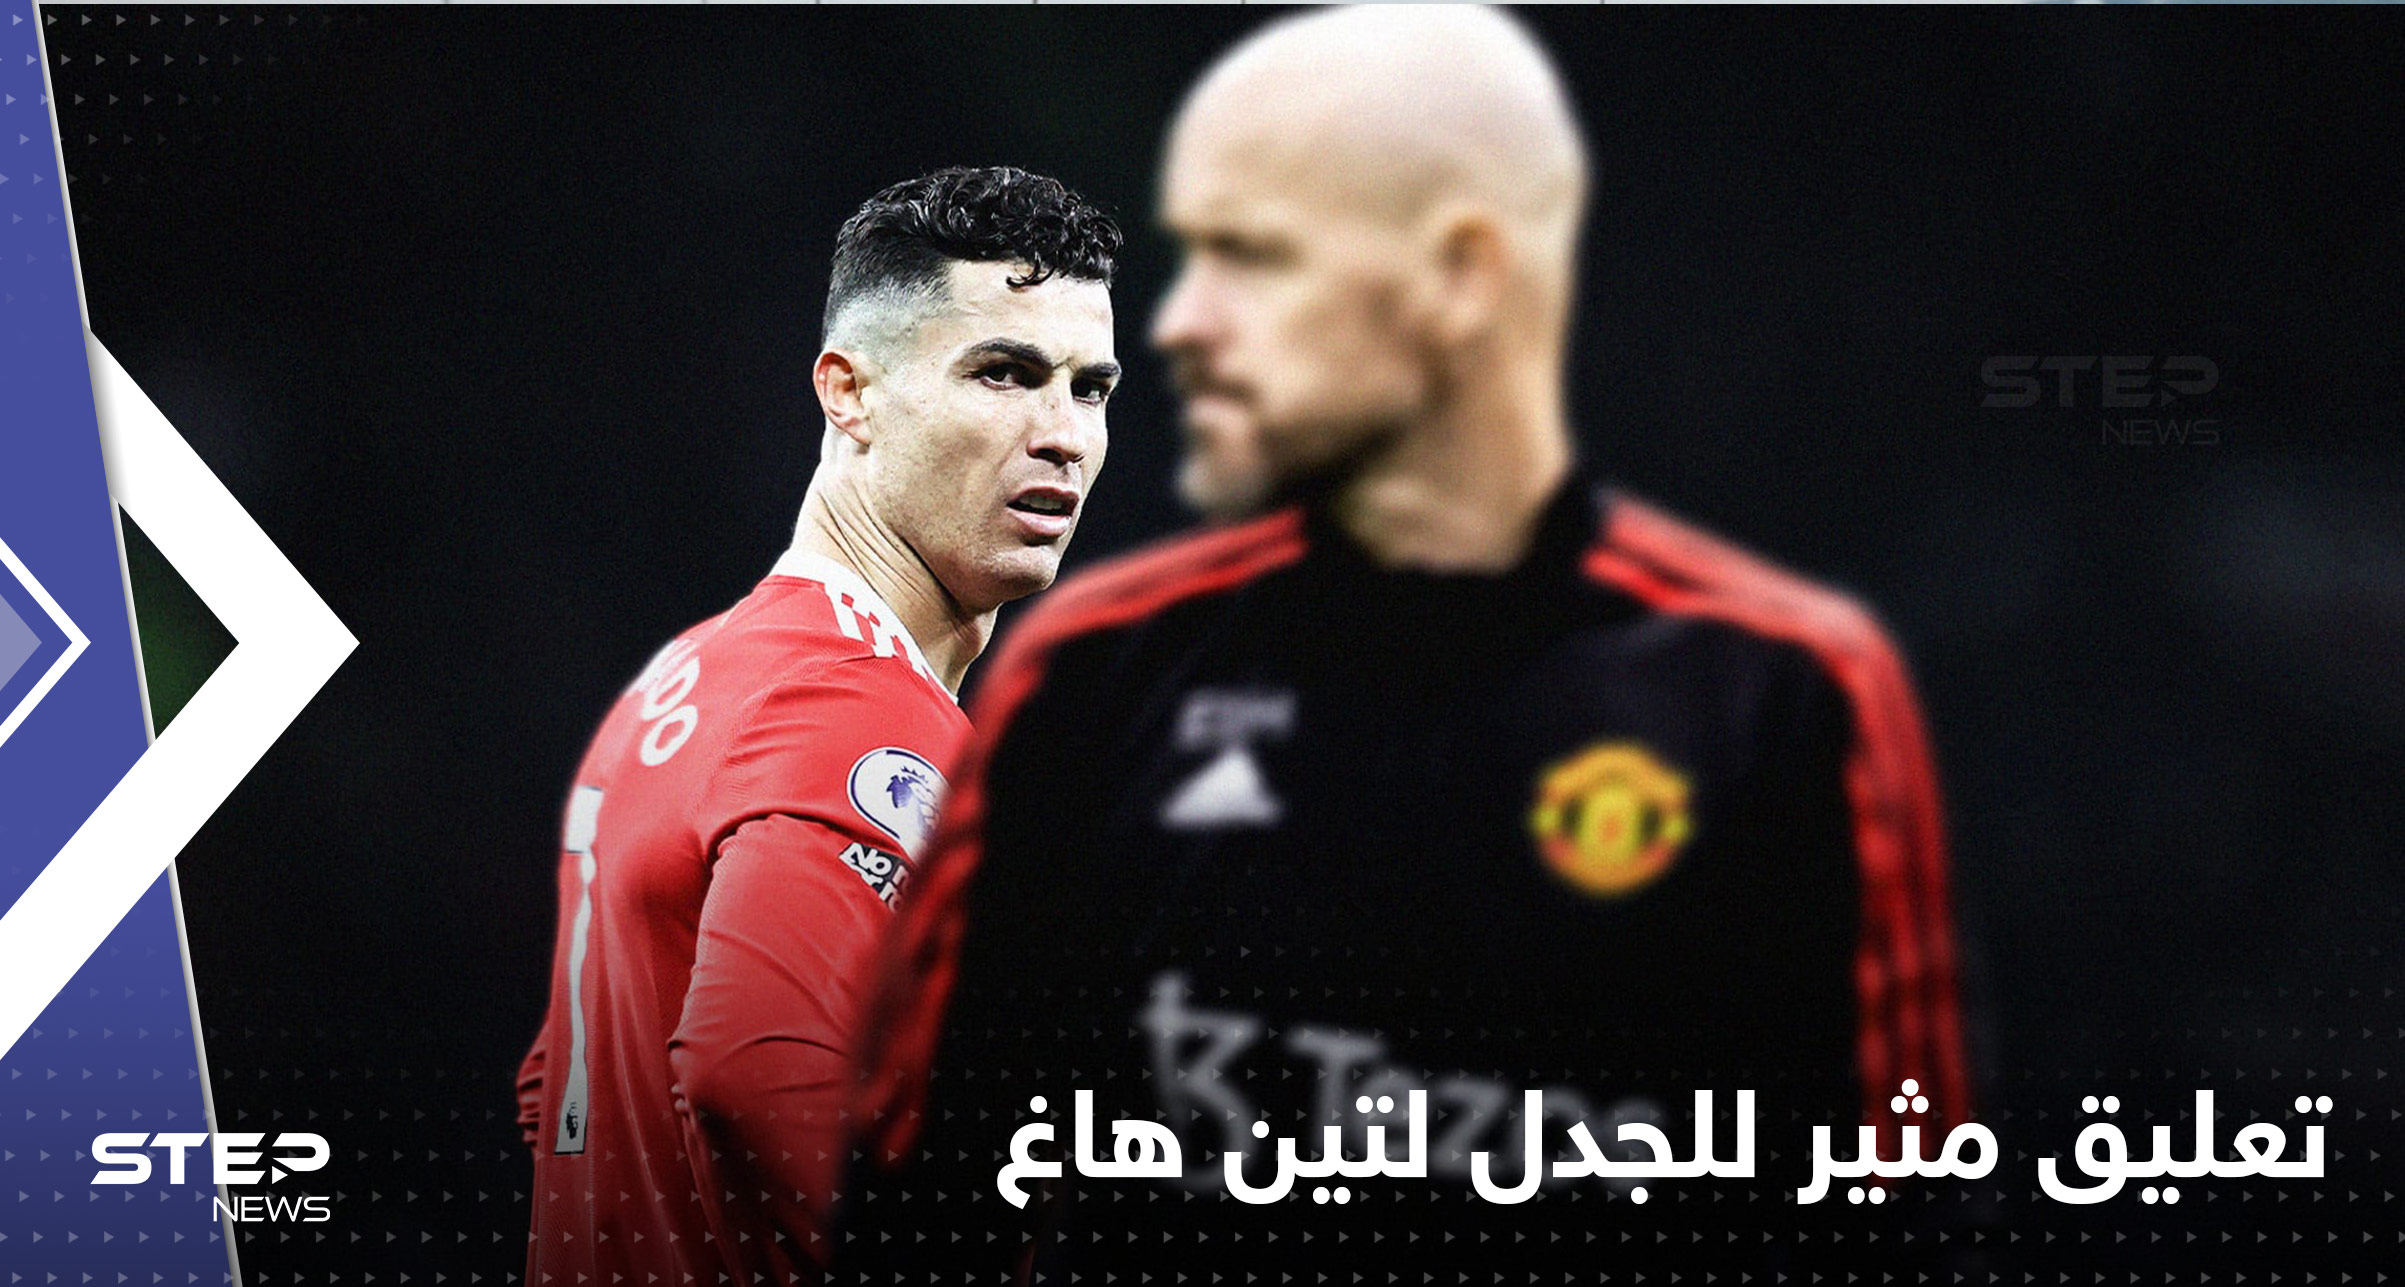 كيف علّق مدرب مانشستر يونايتد على انضمام رونالدو للنصر السعودي؟